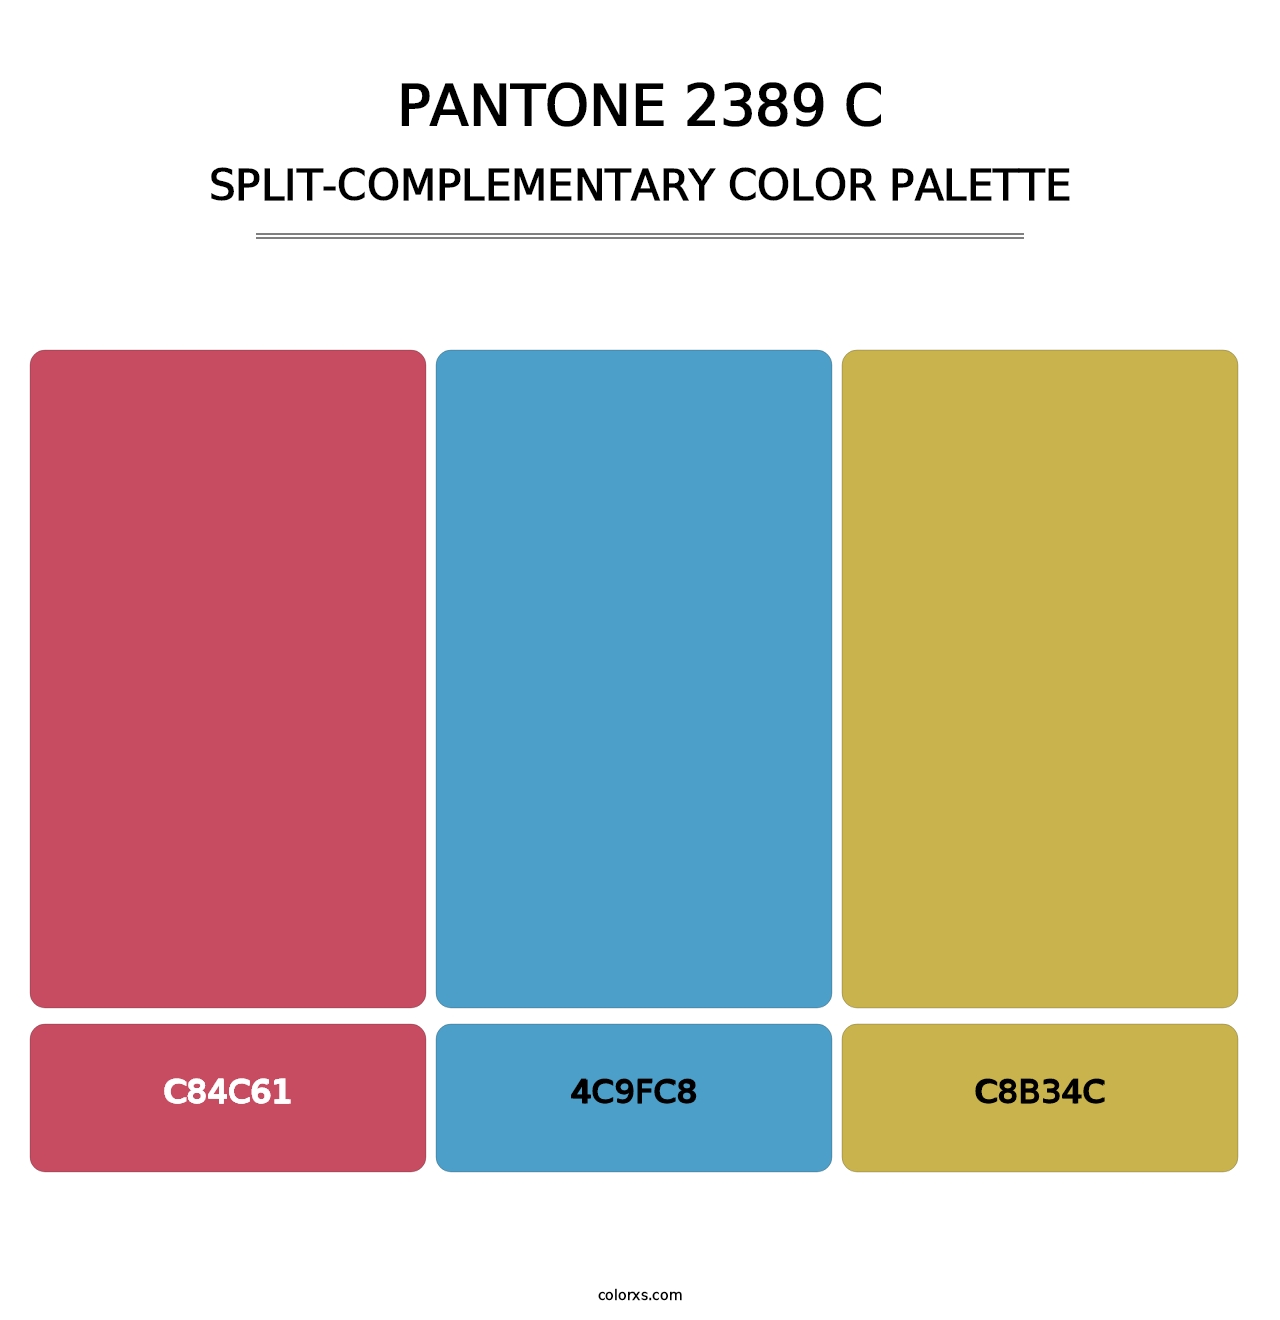 PANTONE 2389 C - Split-Complementary Color Palette